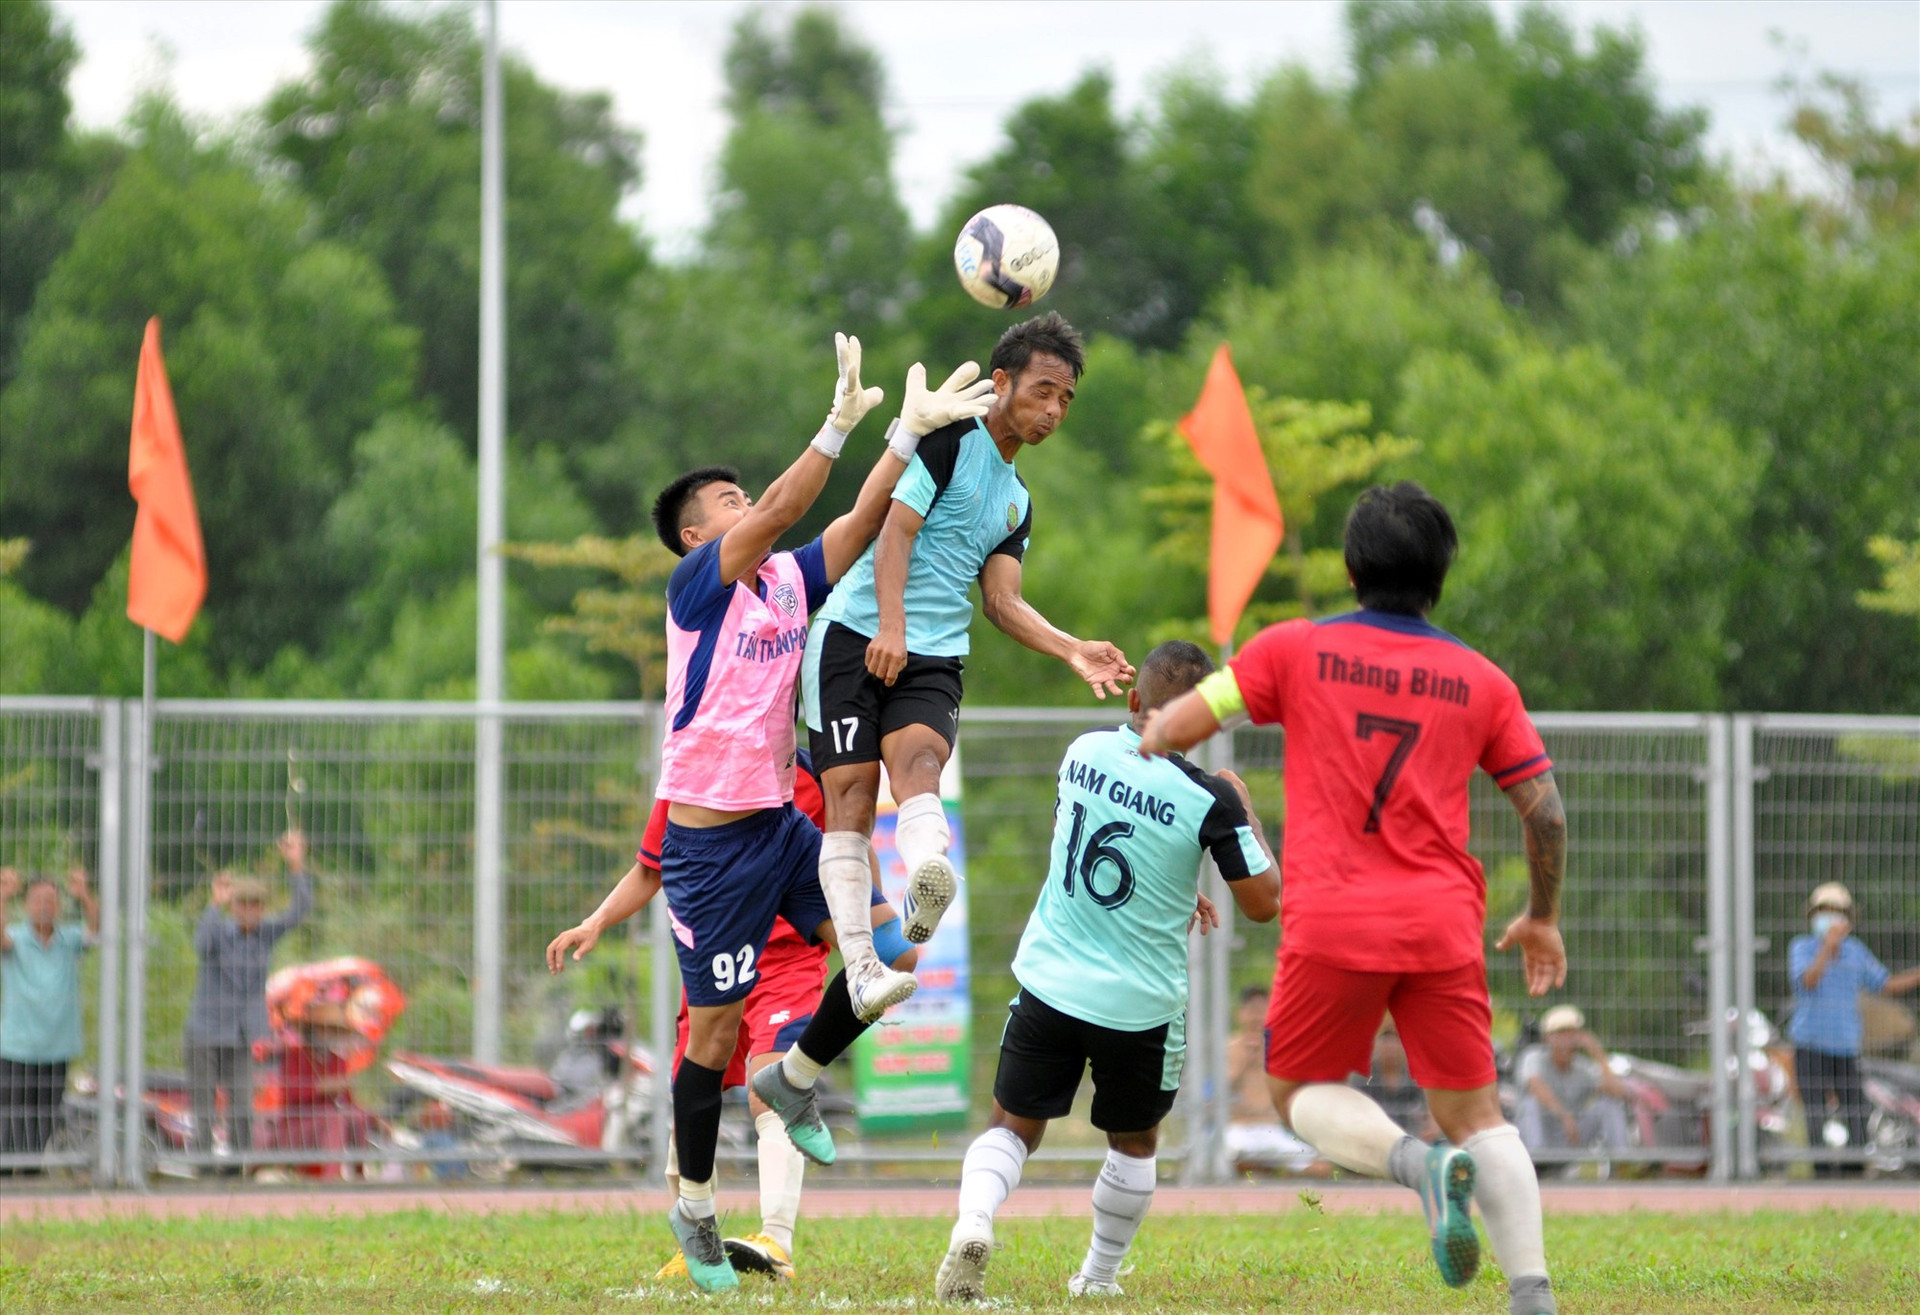 Đội bóng đá huyện Nam Giang thi đấu thành công khi giành huy chương đồng, góp phần giúp đoàn VĐV huyện Nam Giang củng cố vị thứ cao trên bảng xếp hạng đại hội. Ảnh: A.S